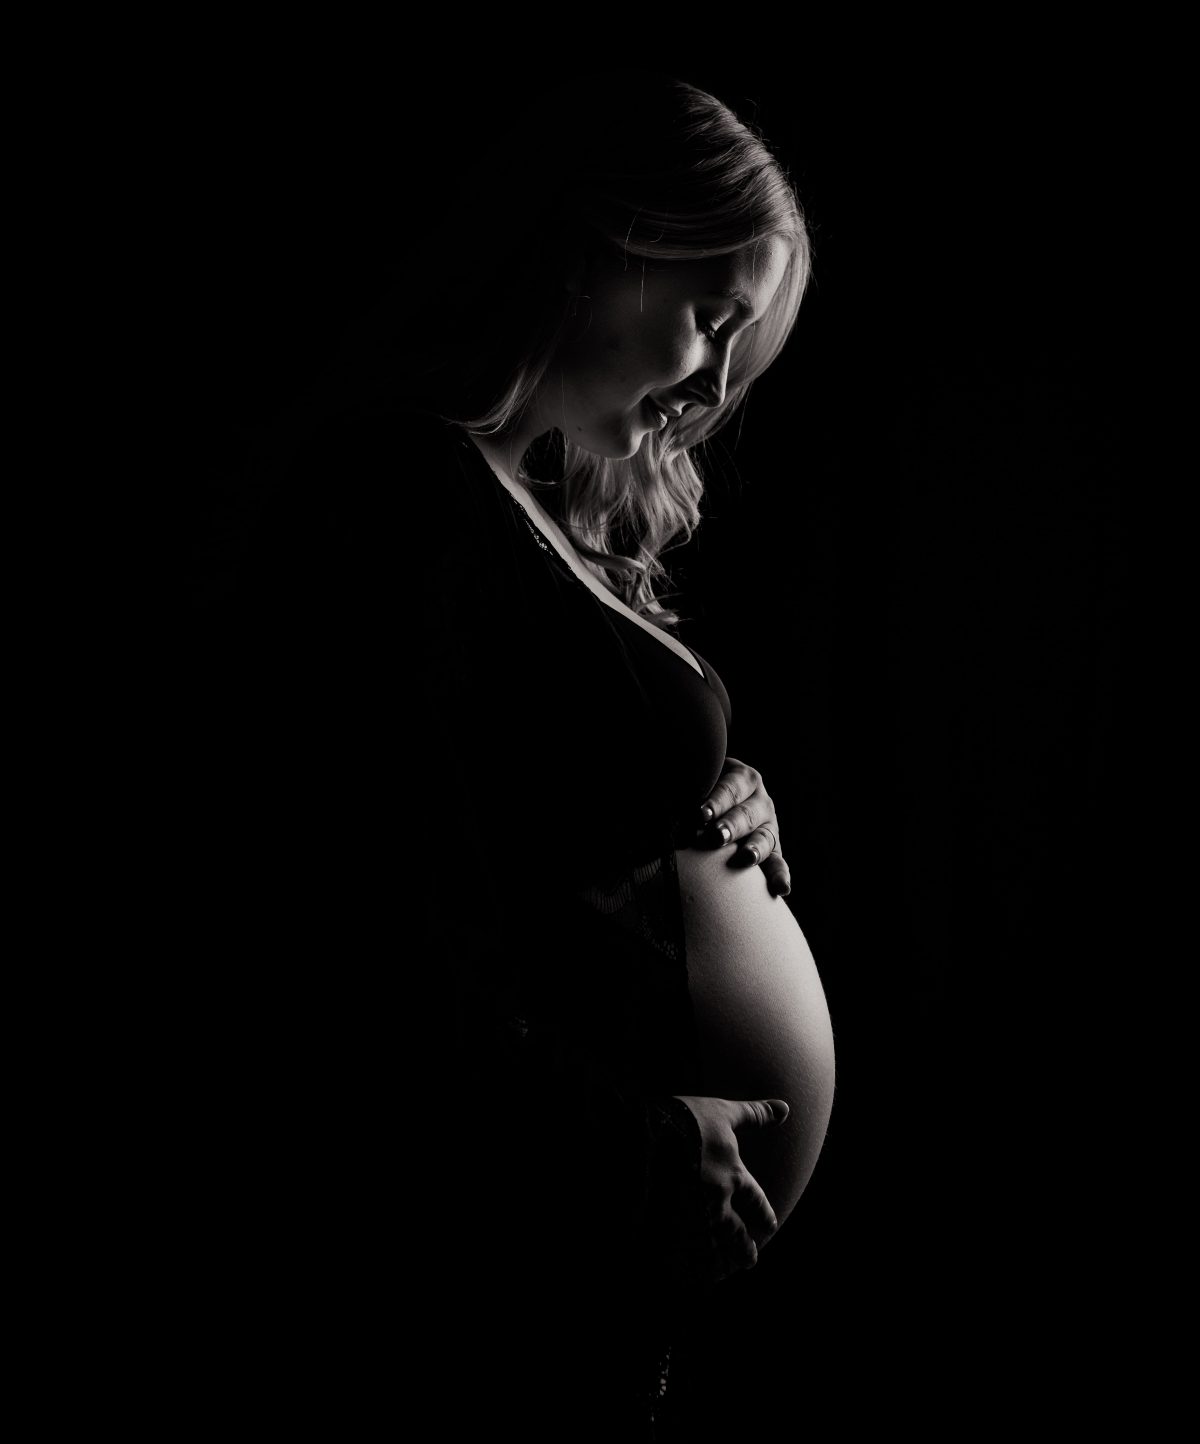 Mamamnezia sau Sindromul “Creierului de gravidă”: mit sau adevăr?